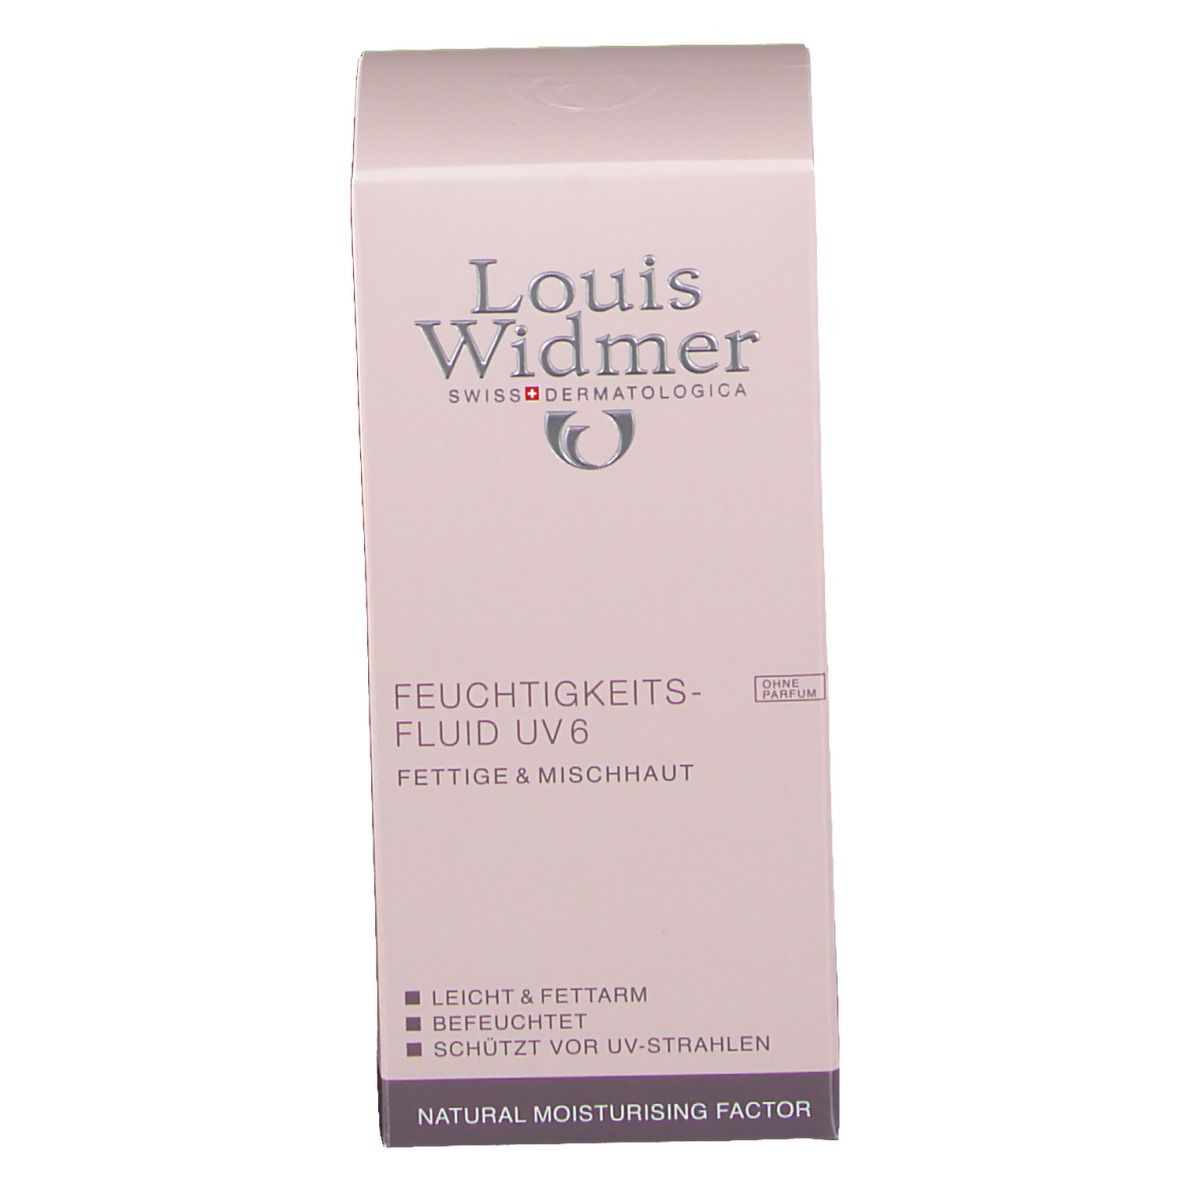 Louis Widmer Feuchtigkeitsfluid UV 6 unparfümiert